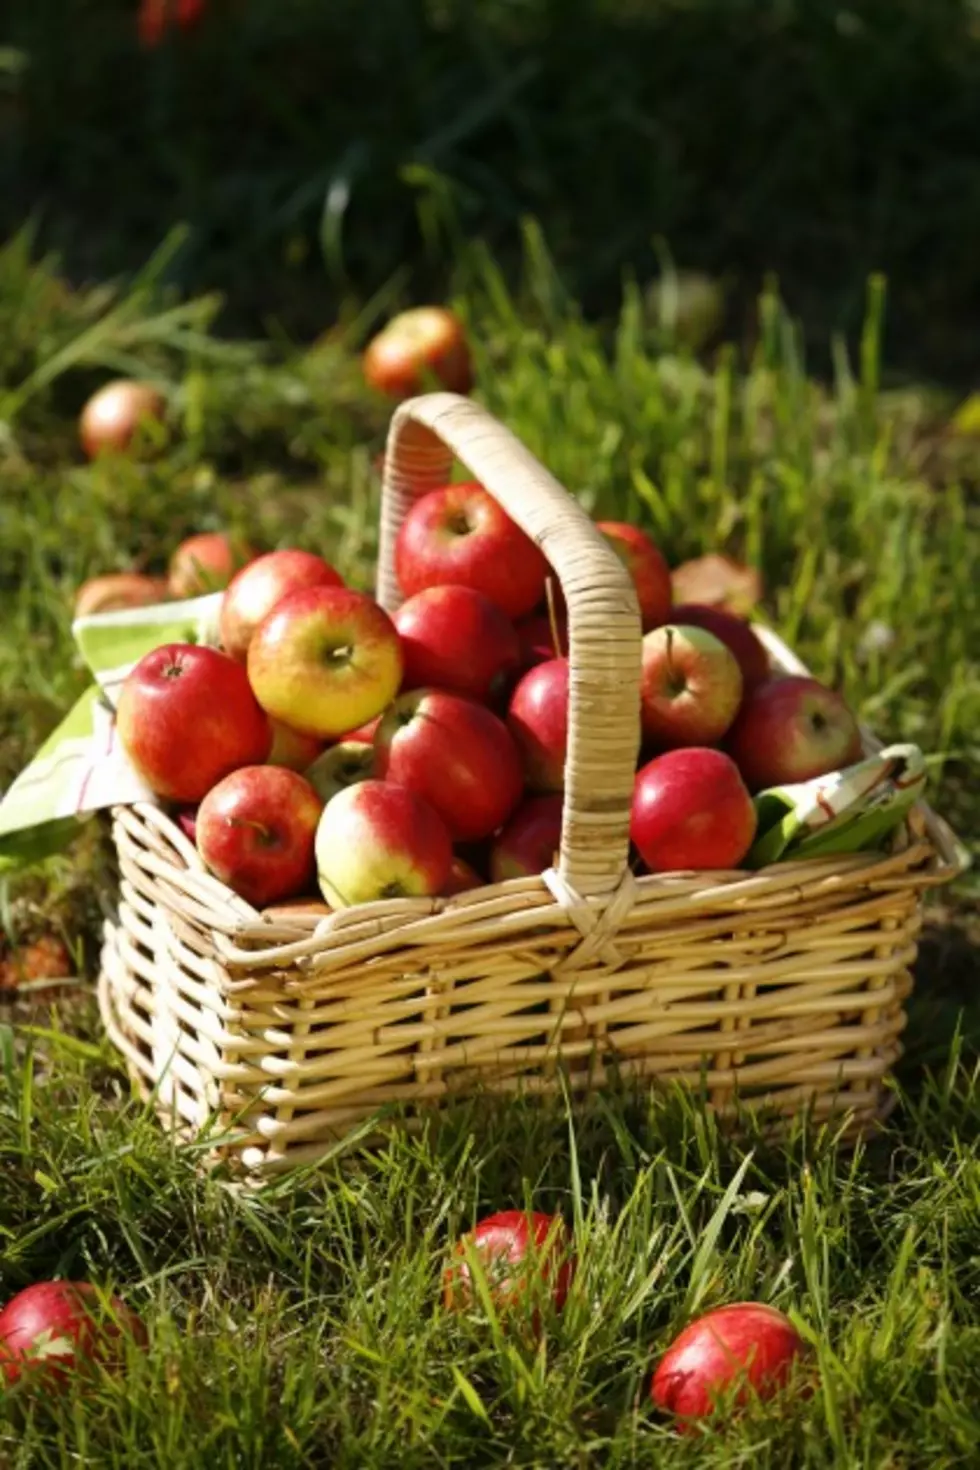 Apple Picking Spots Near Binghamton